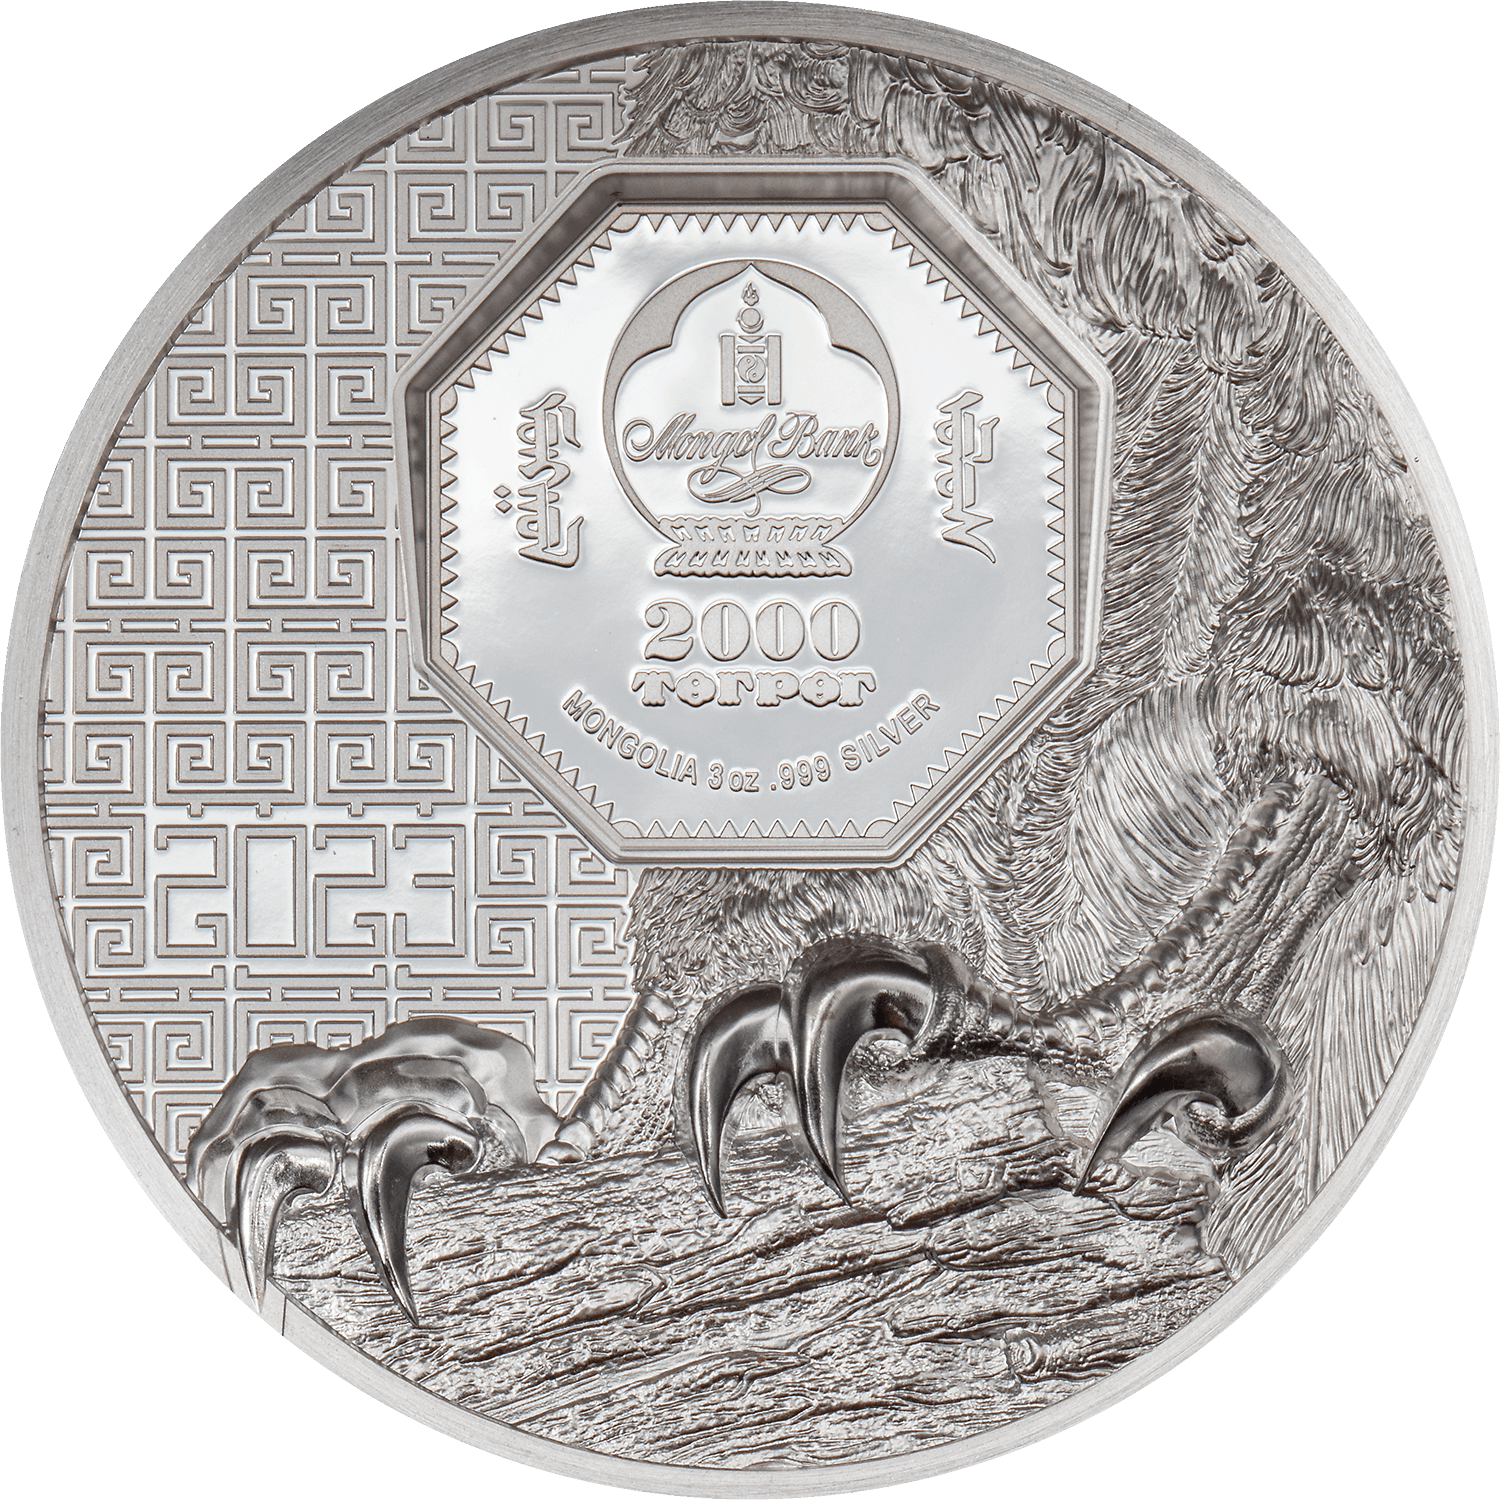 FALCON Wild Mongolia 3 Oz Silver Coin 2000 Togrog Mongolia 2023 - PARTHAVA COIN